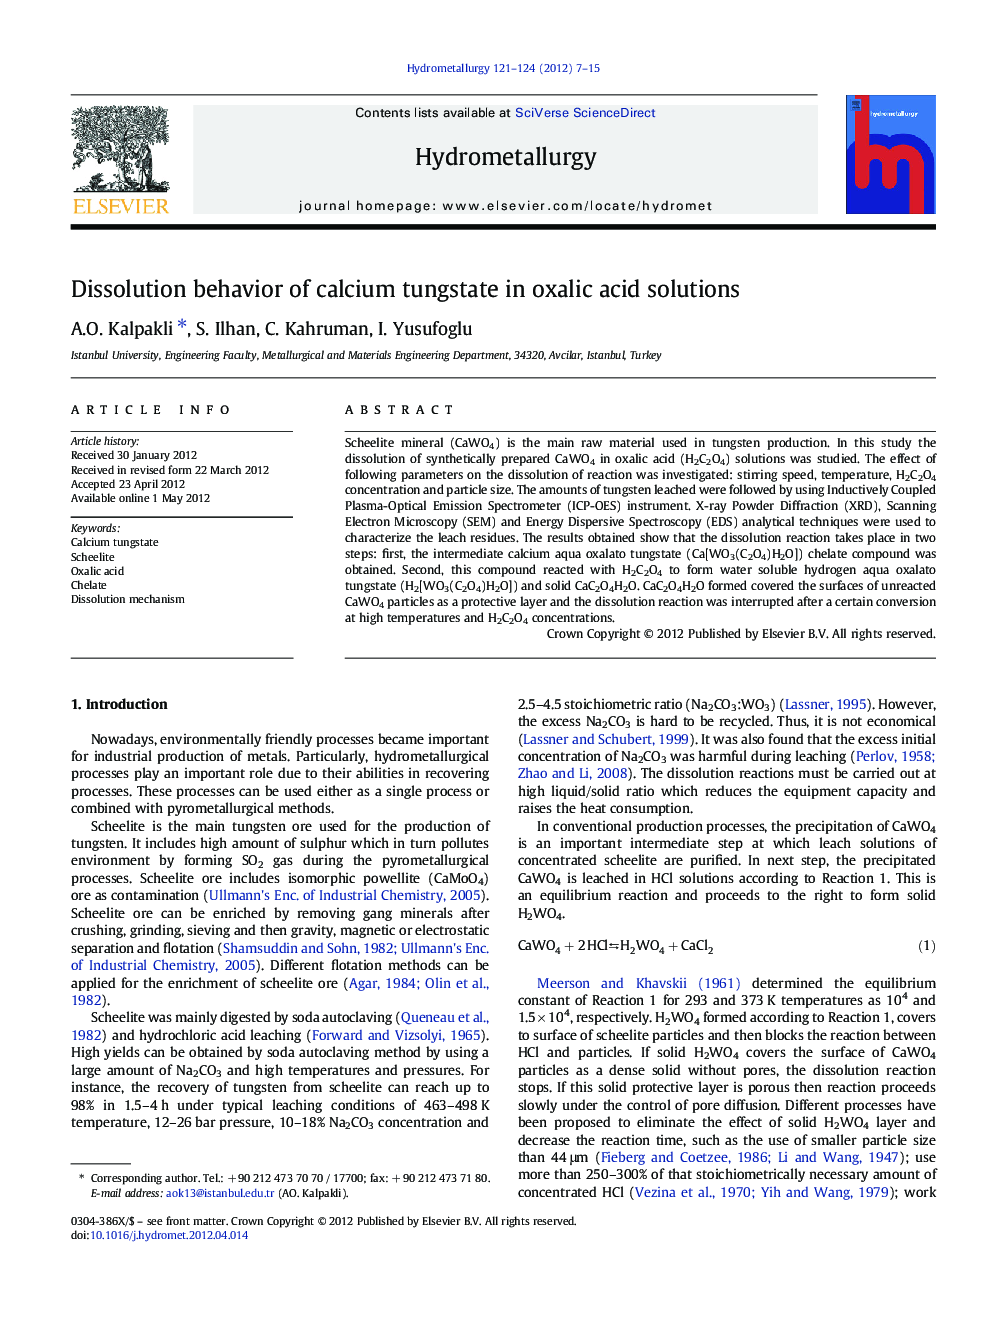 Dissolution behavior of calcium tungstate in oxalic acid solutions